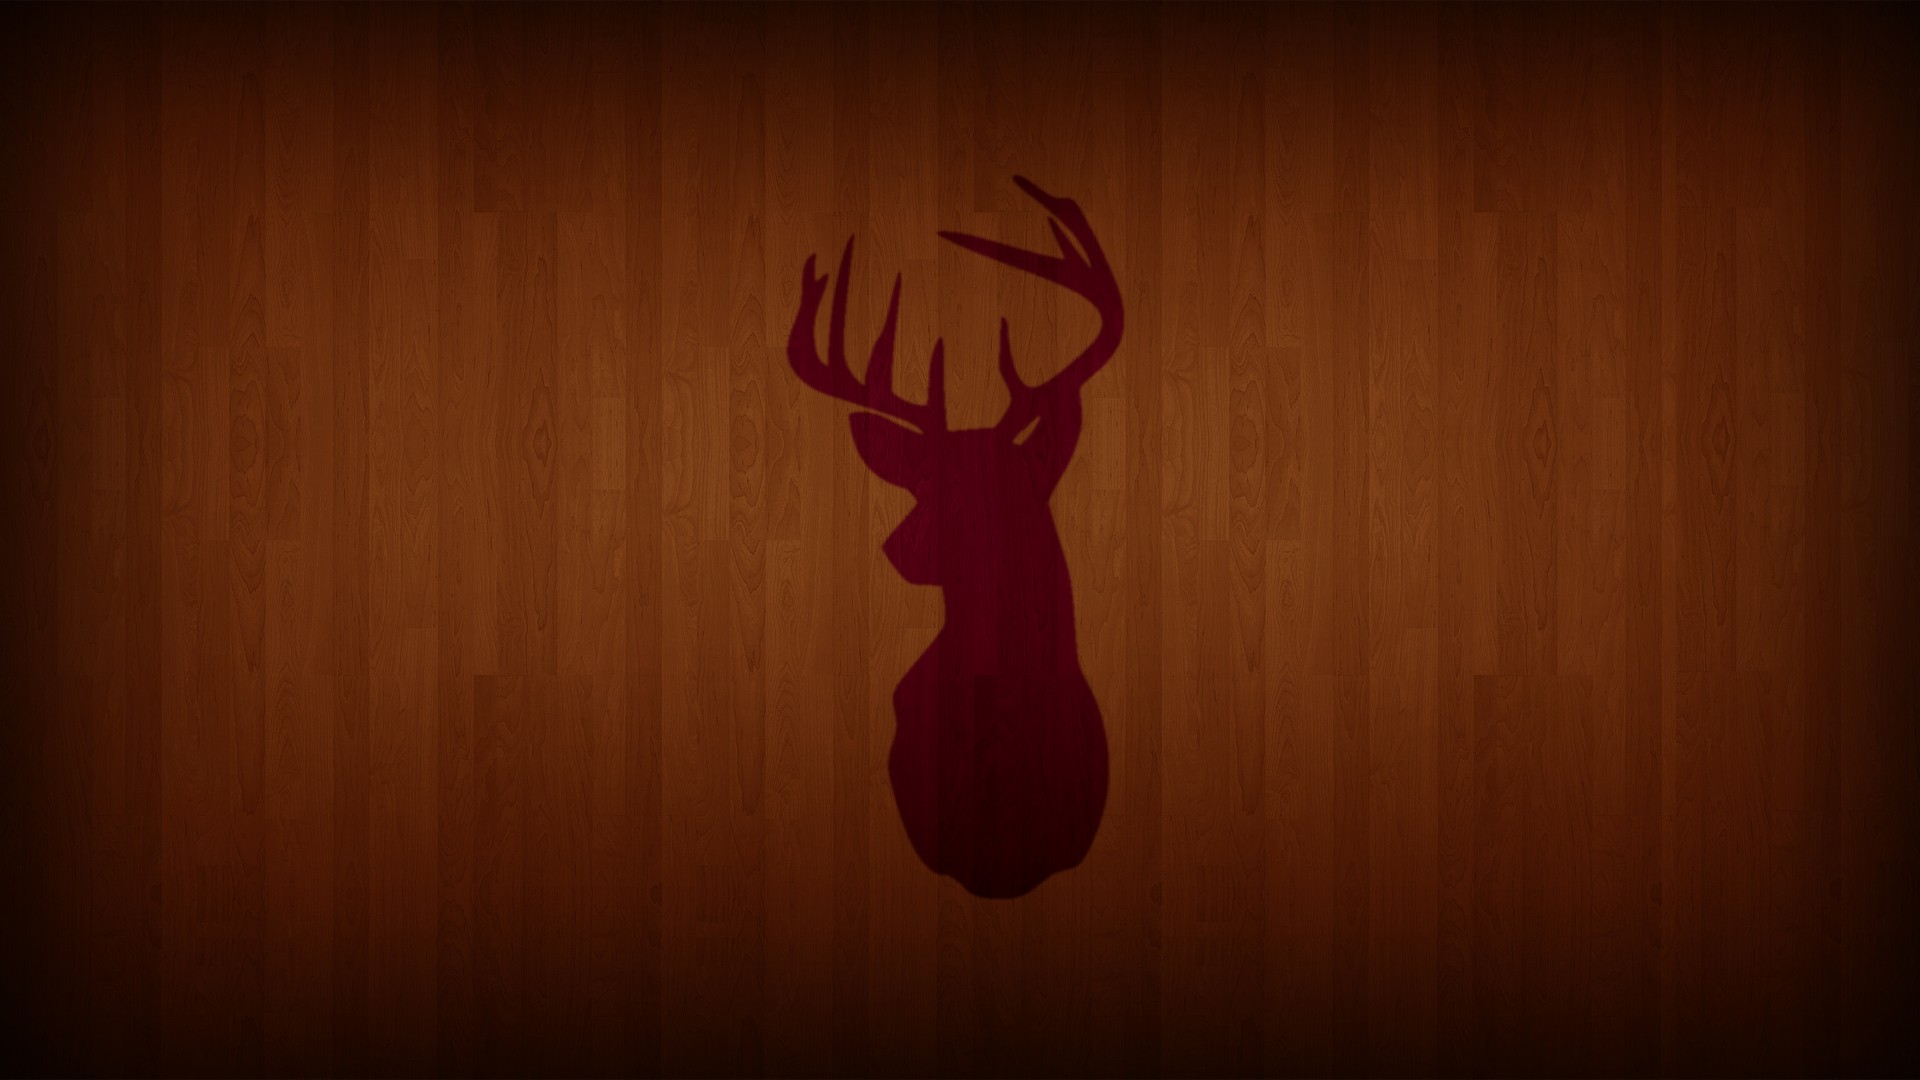 deer, Wooden surface, Wood Wallpaper